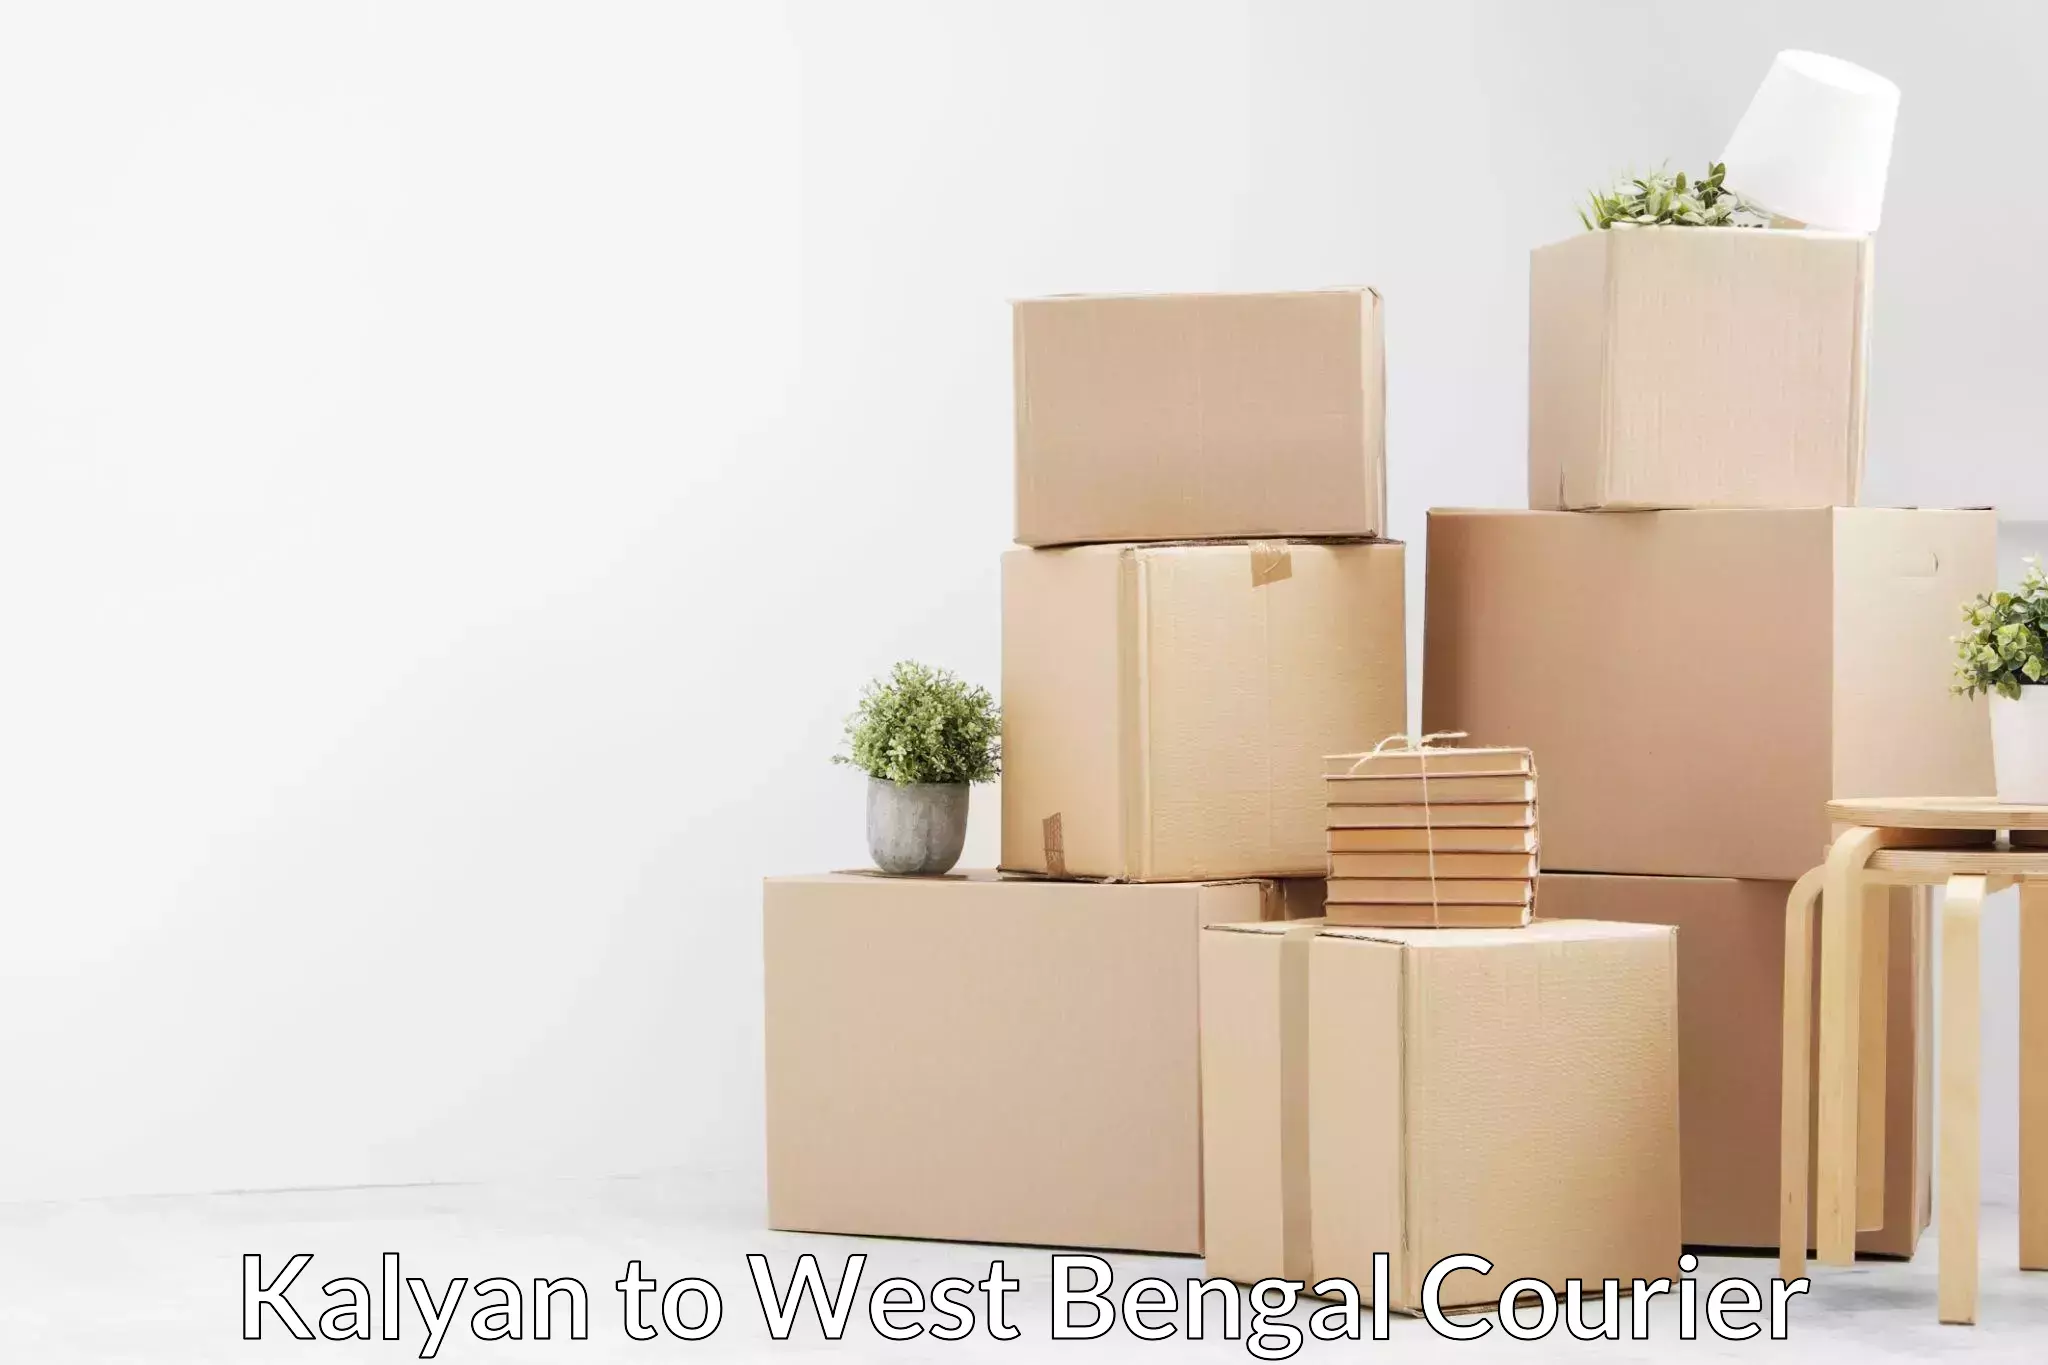 Local furniture movers Kalyan to Kolkata Port